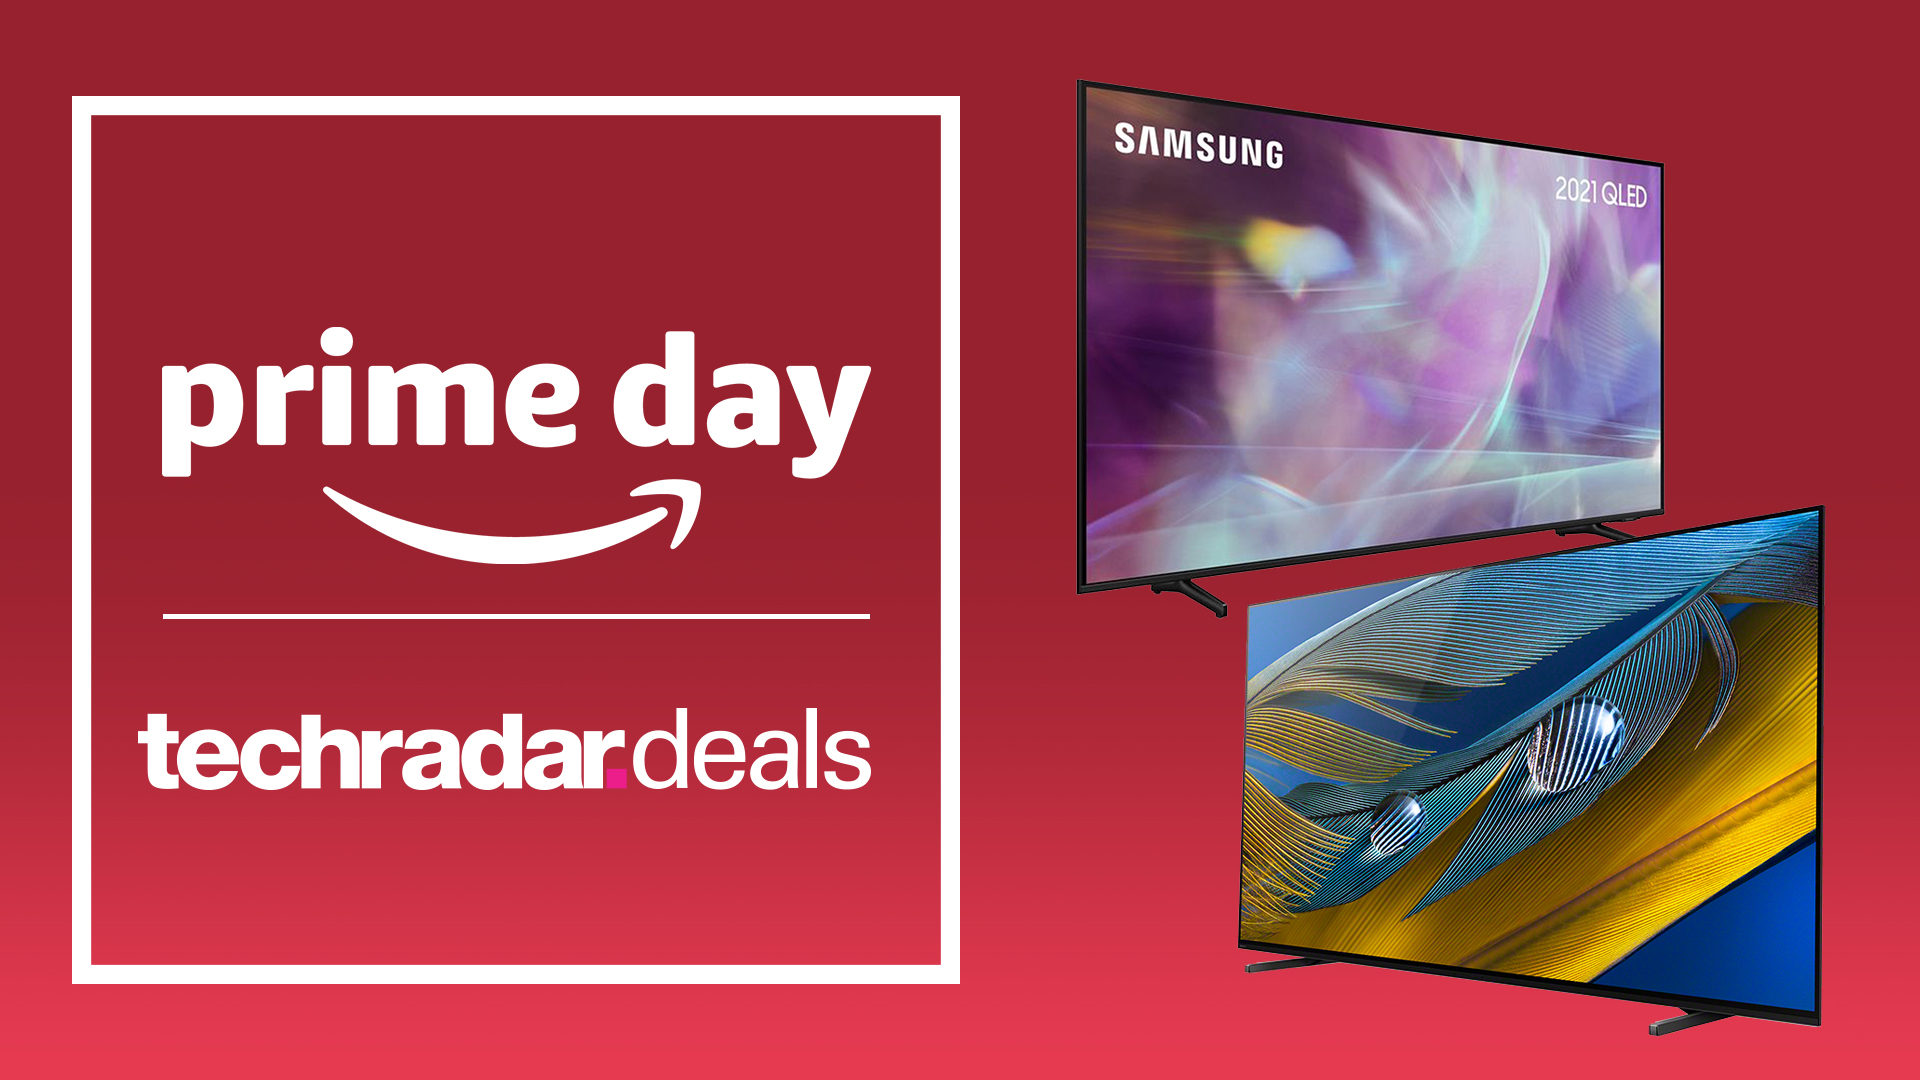 Two Телевизоры на красном фоне с табличкой о том, что Prime Day распродажи